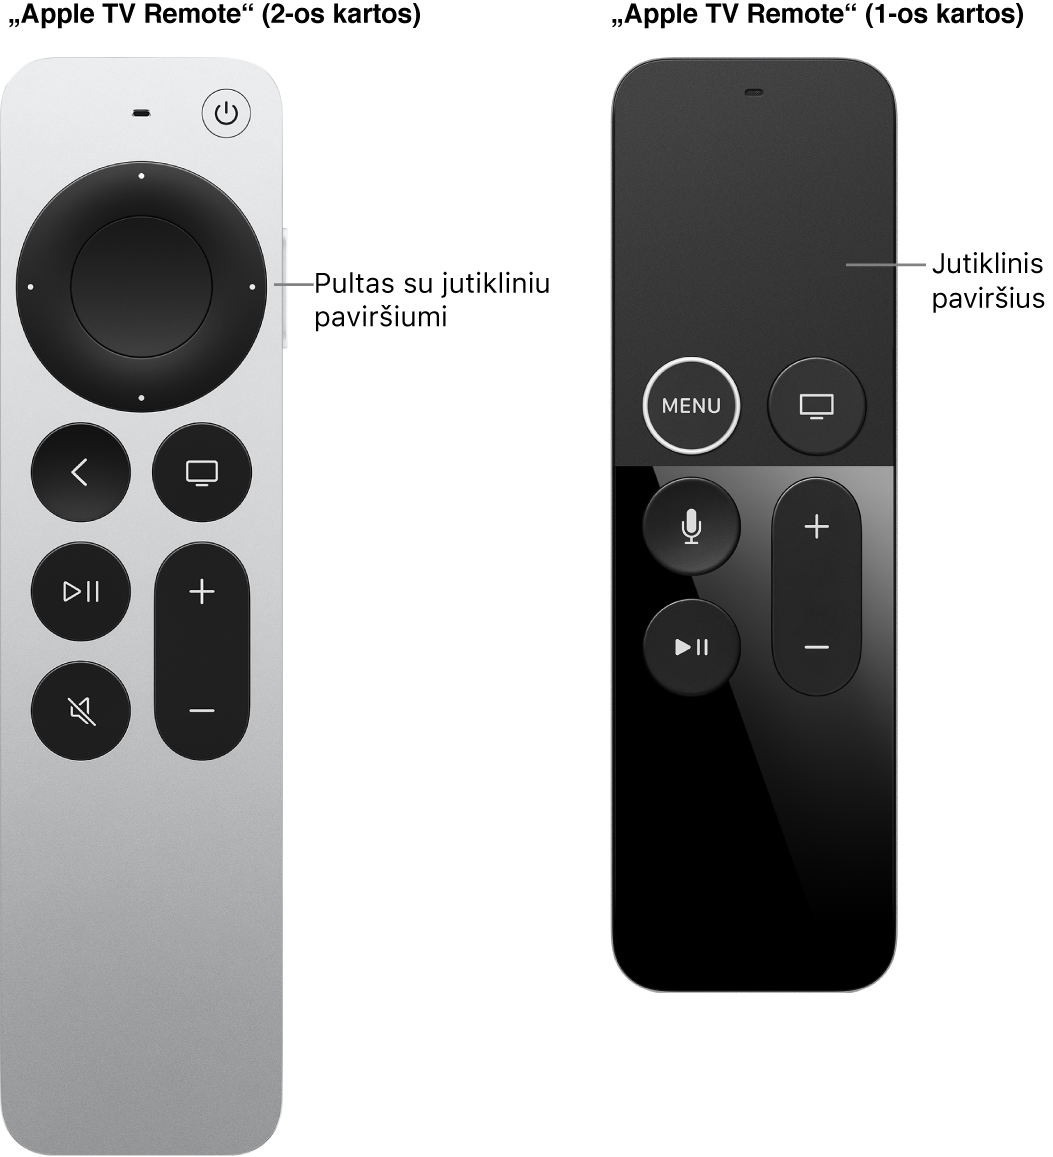 „Apple TV Remote“ (2 kartos) su spaudžiamąja sritimi ir „Apple TV Remote“ (1 kartos) su jutikliniu paviršiumi